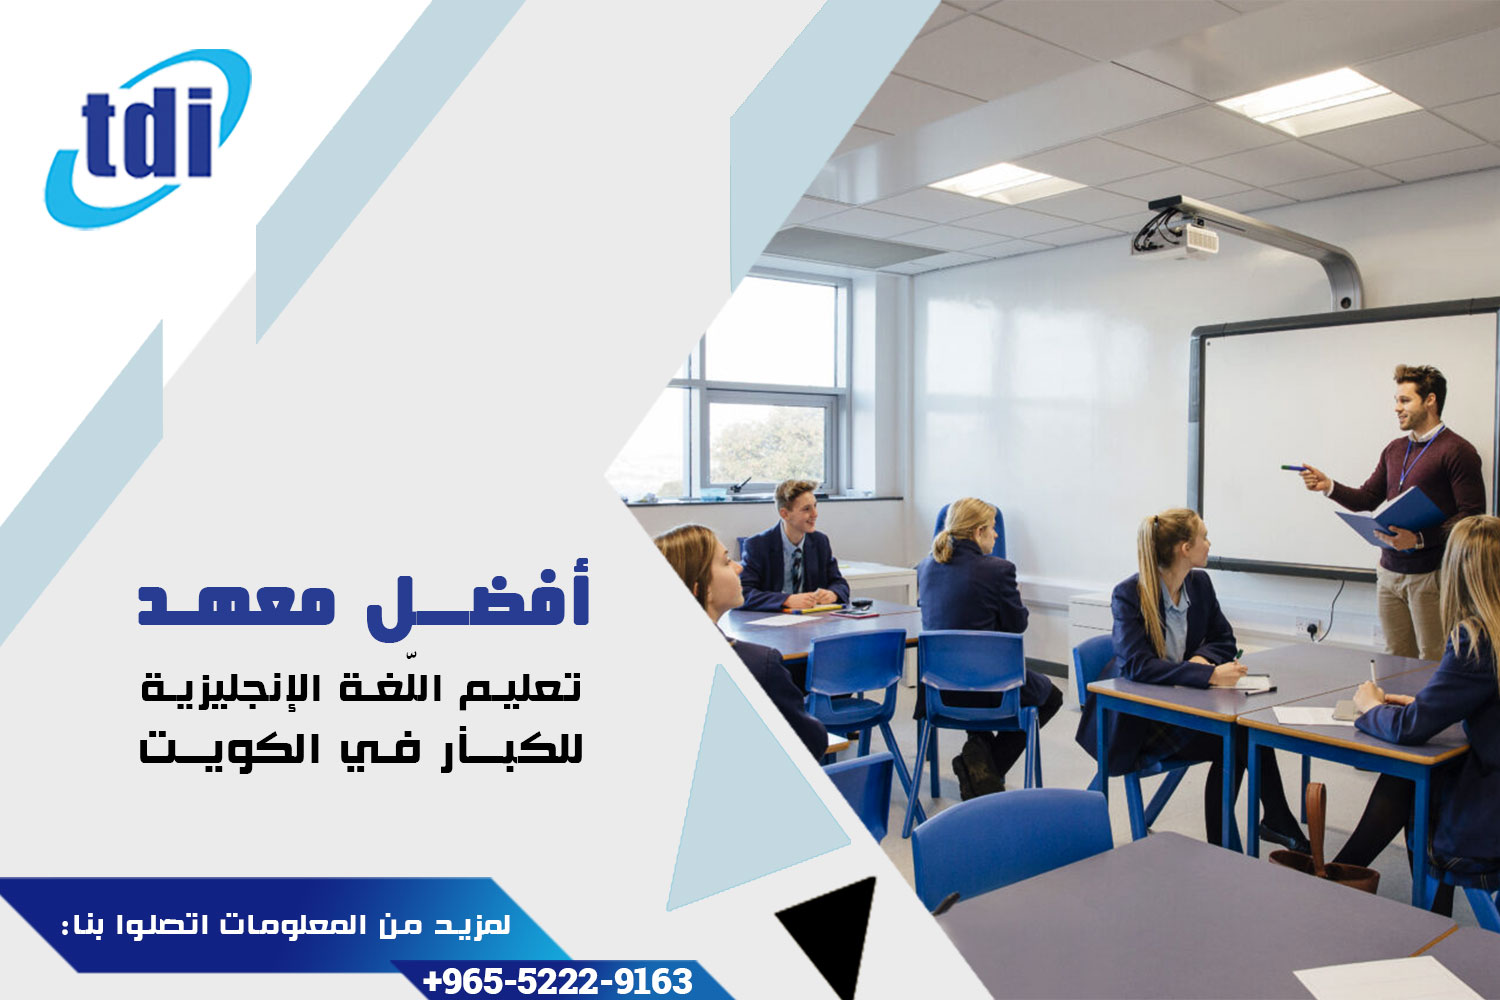 معهد TDI لتعليم الإنكليزية للكبار في الكويت: معلومات عامة ومميزات